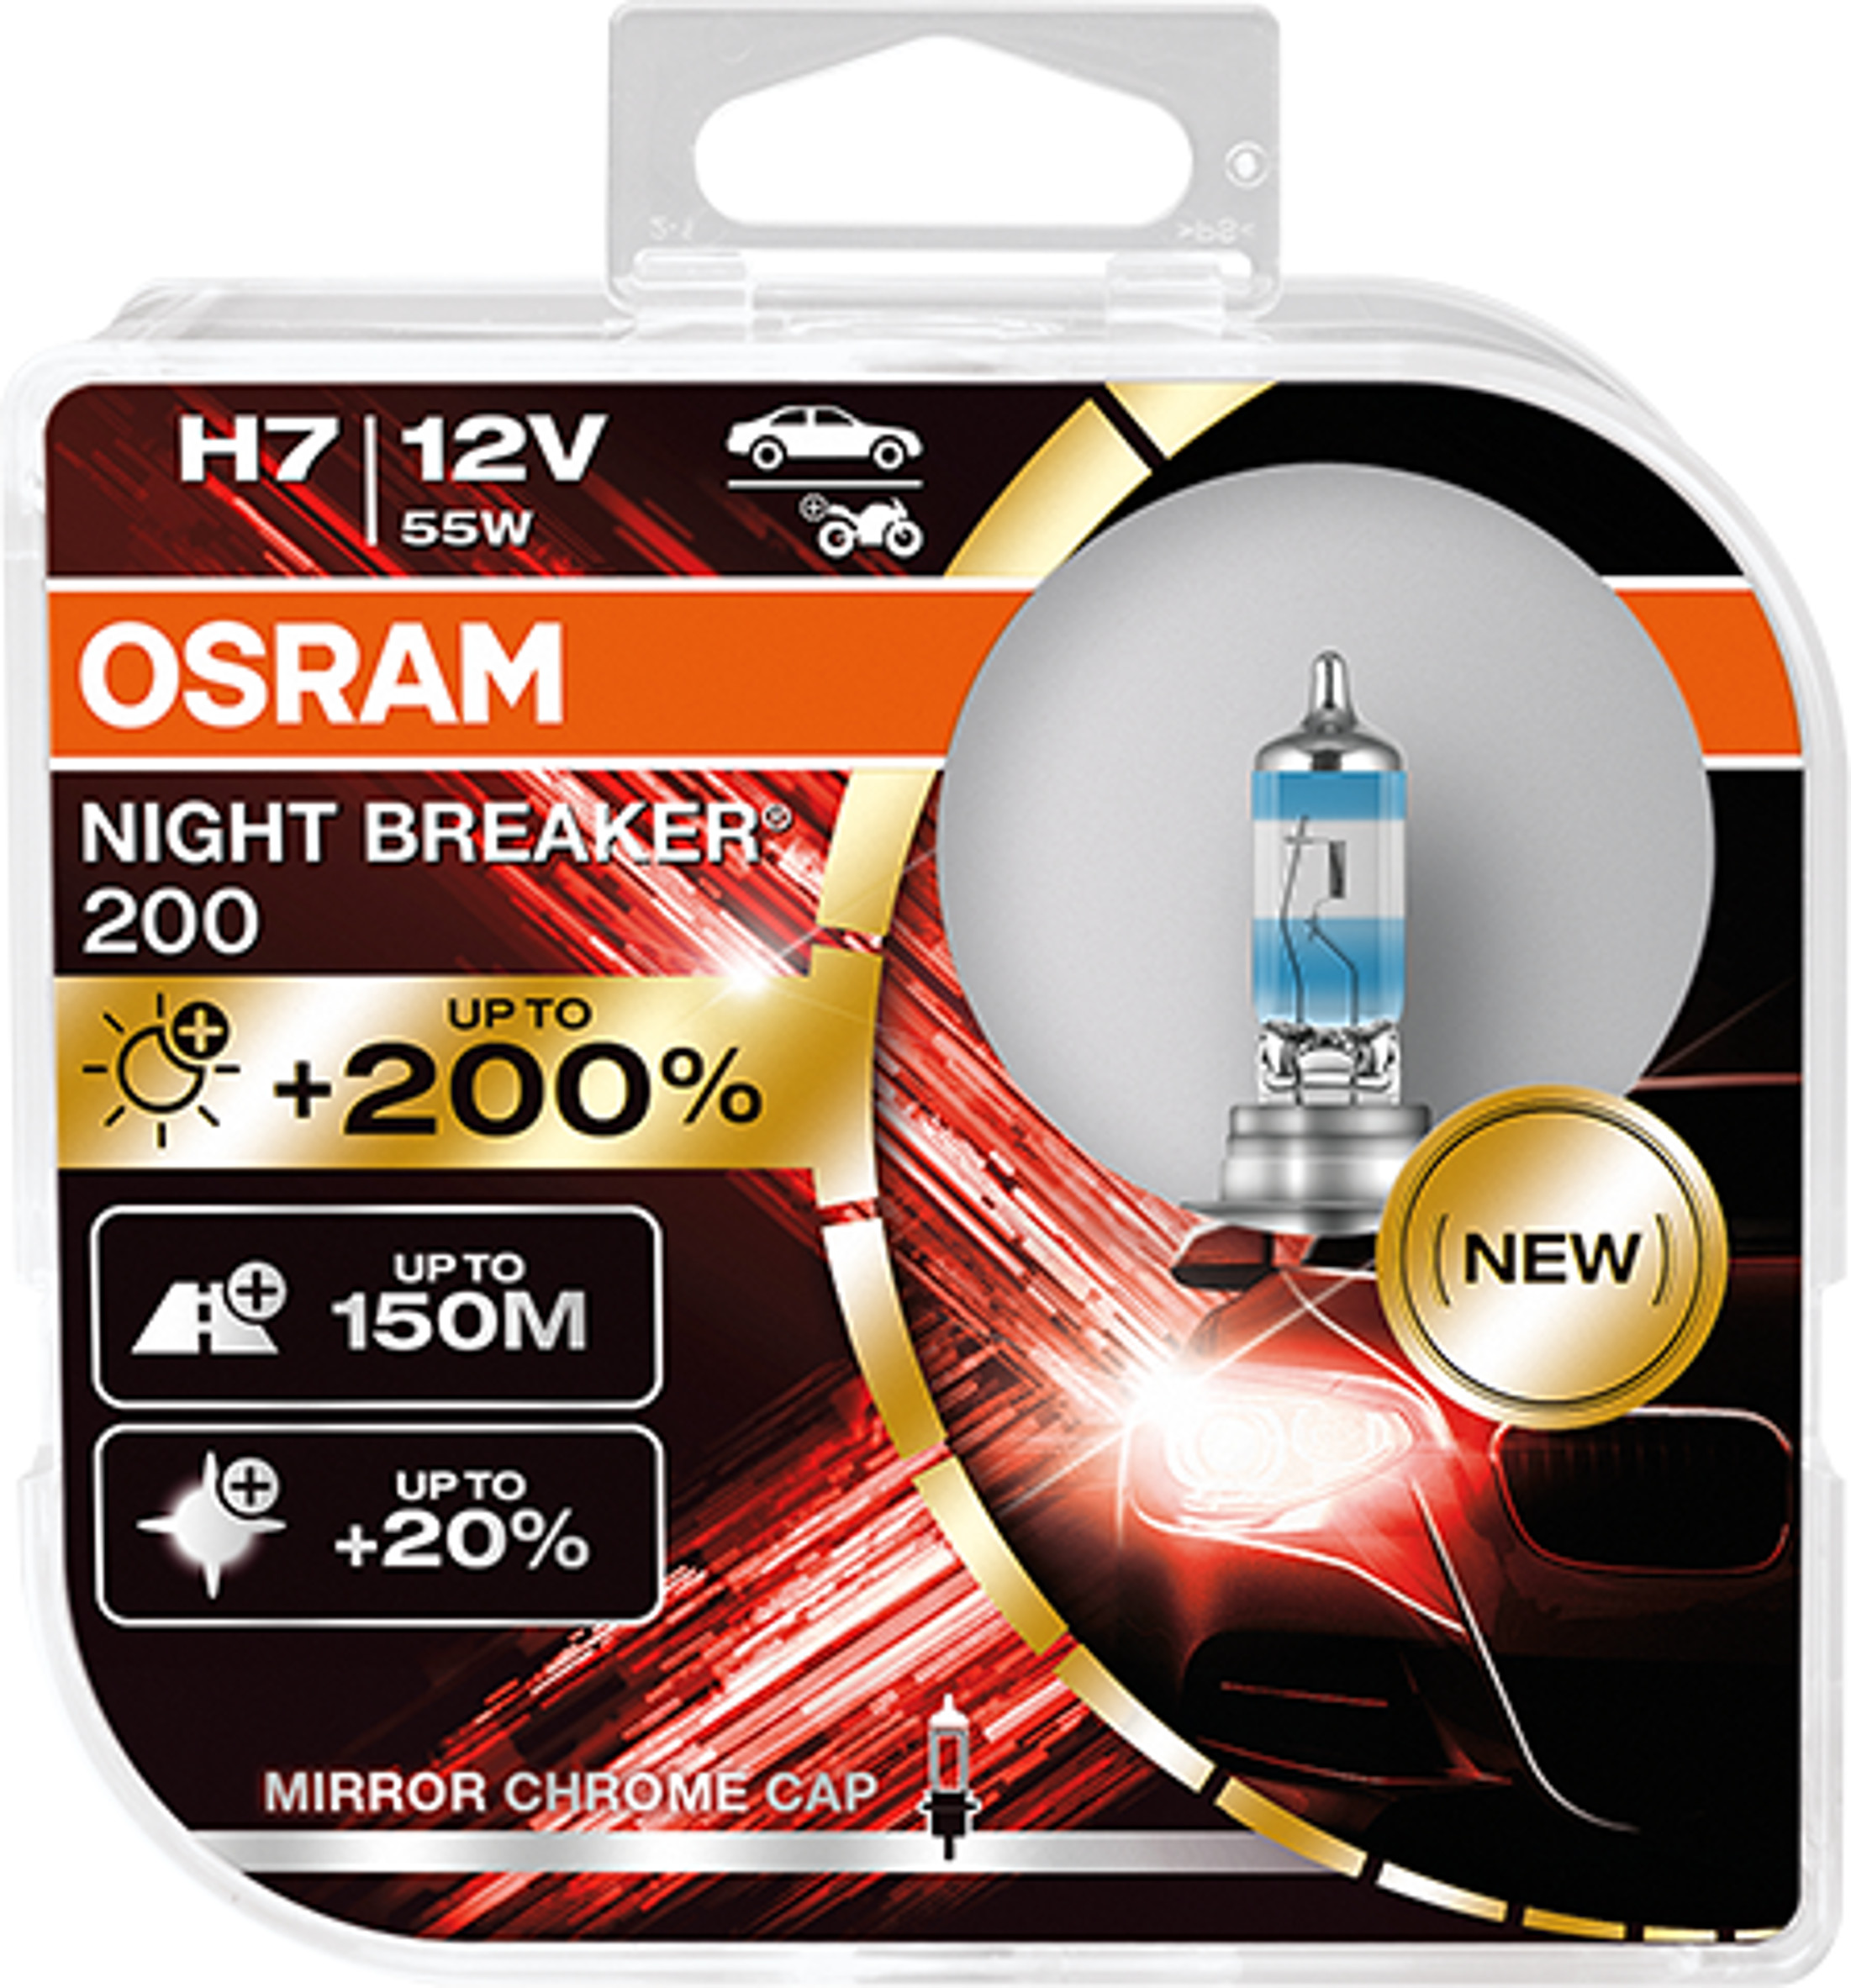 H7 12V NIGHT BREAKER 200 bis zu 200% mehr Licht 2St OSRAM